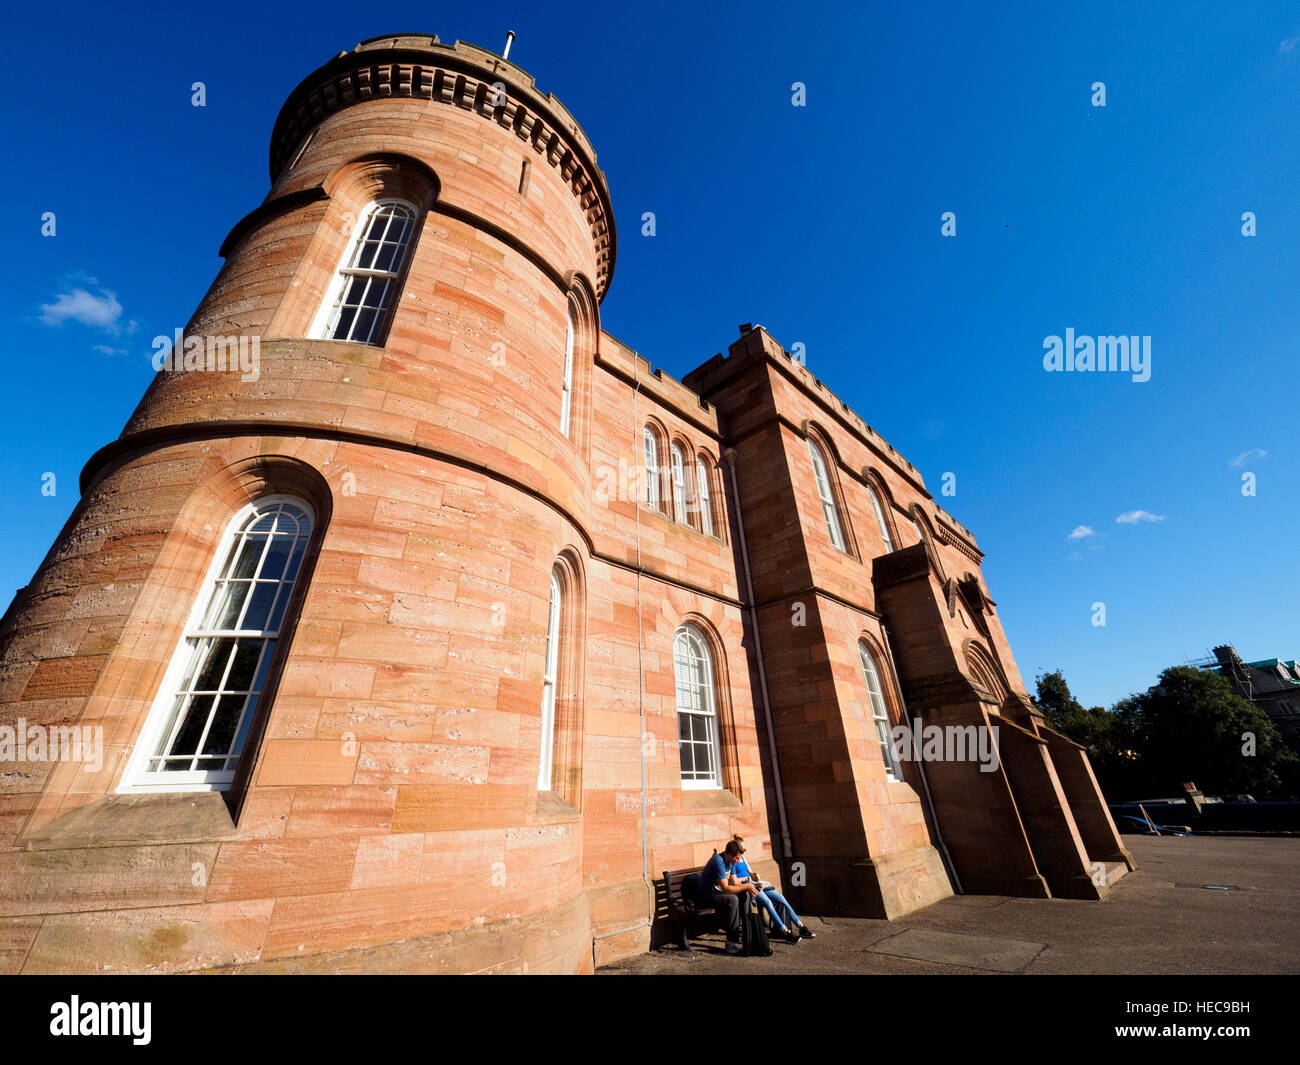 Inverness castle - Scotland, United Kingdom Stock Photo